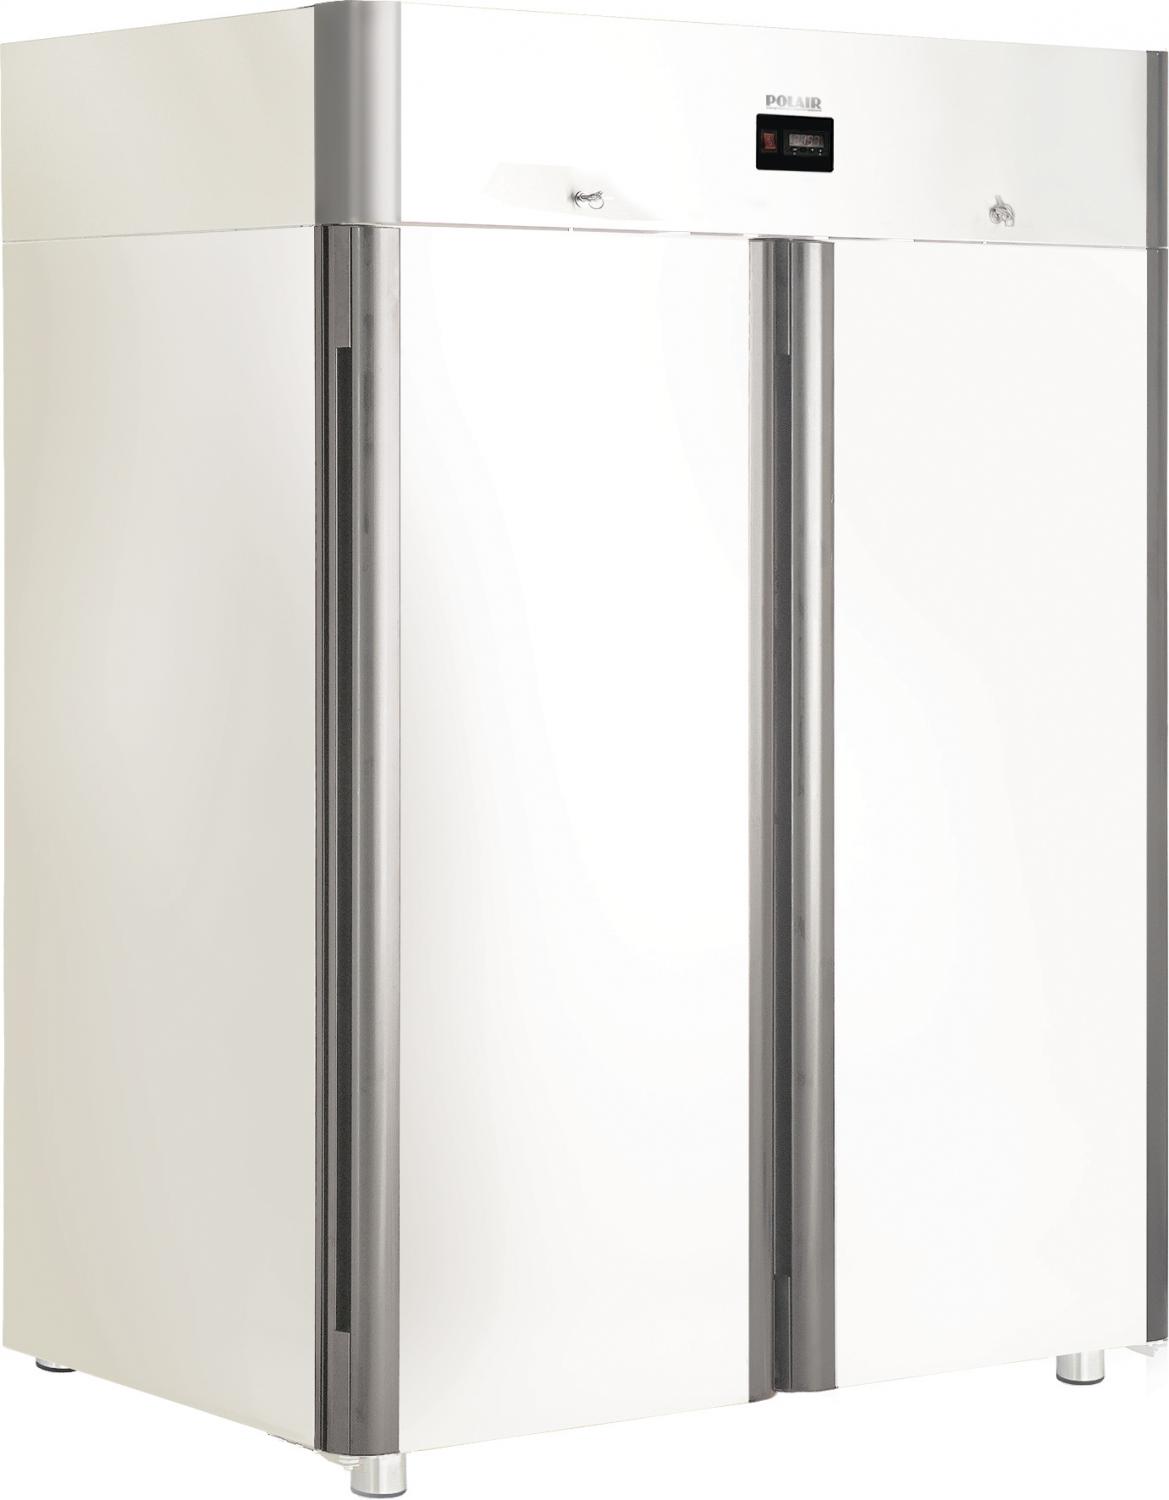 Холодильный шкаф CM110-Sm